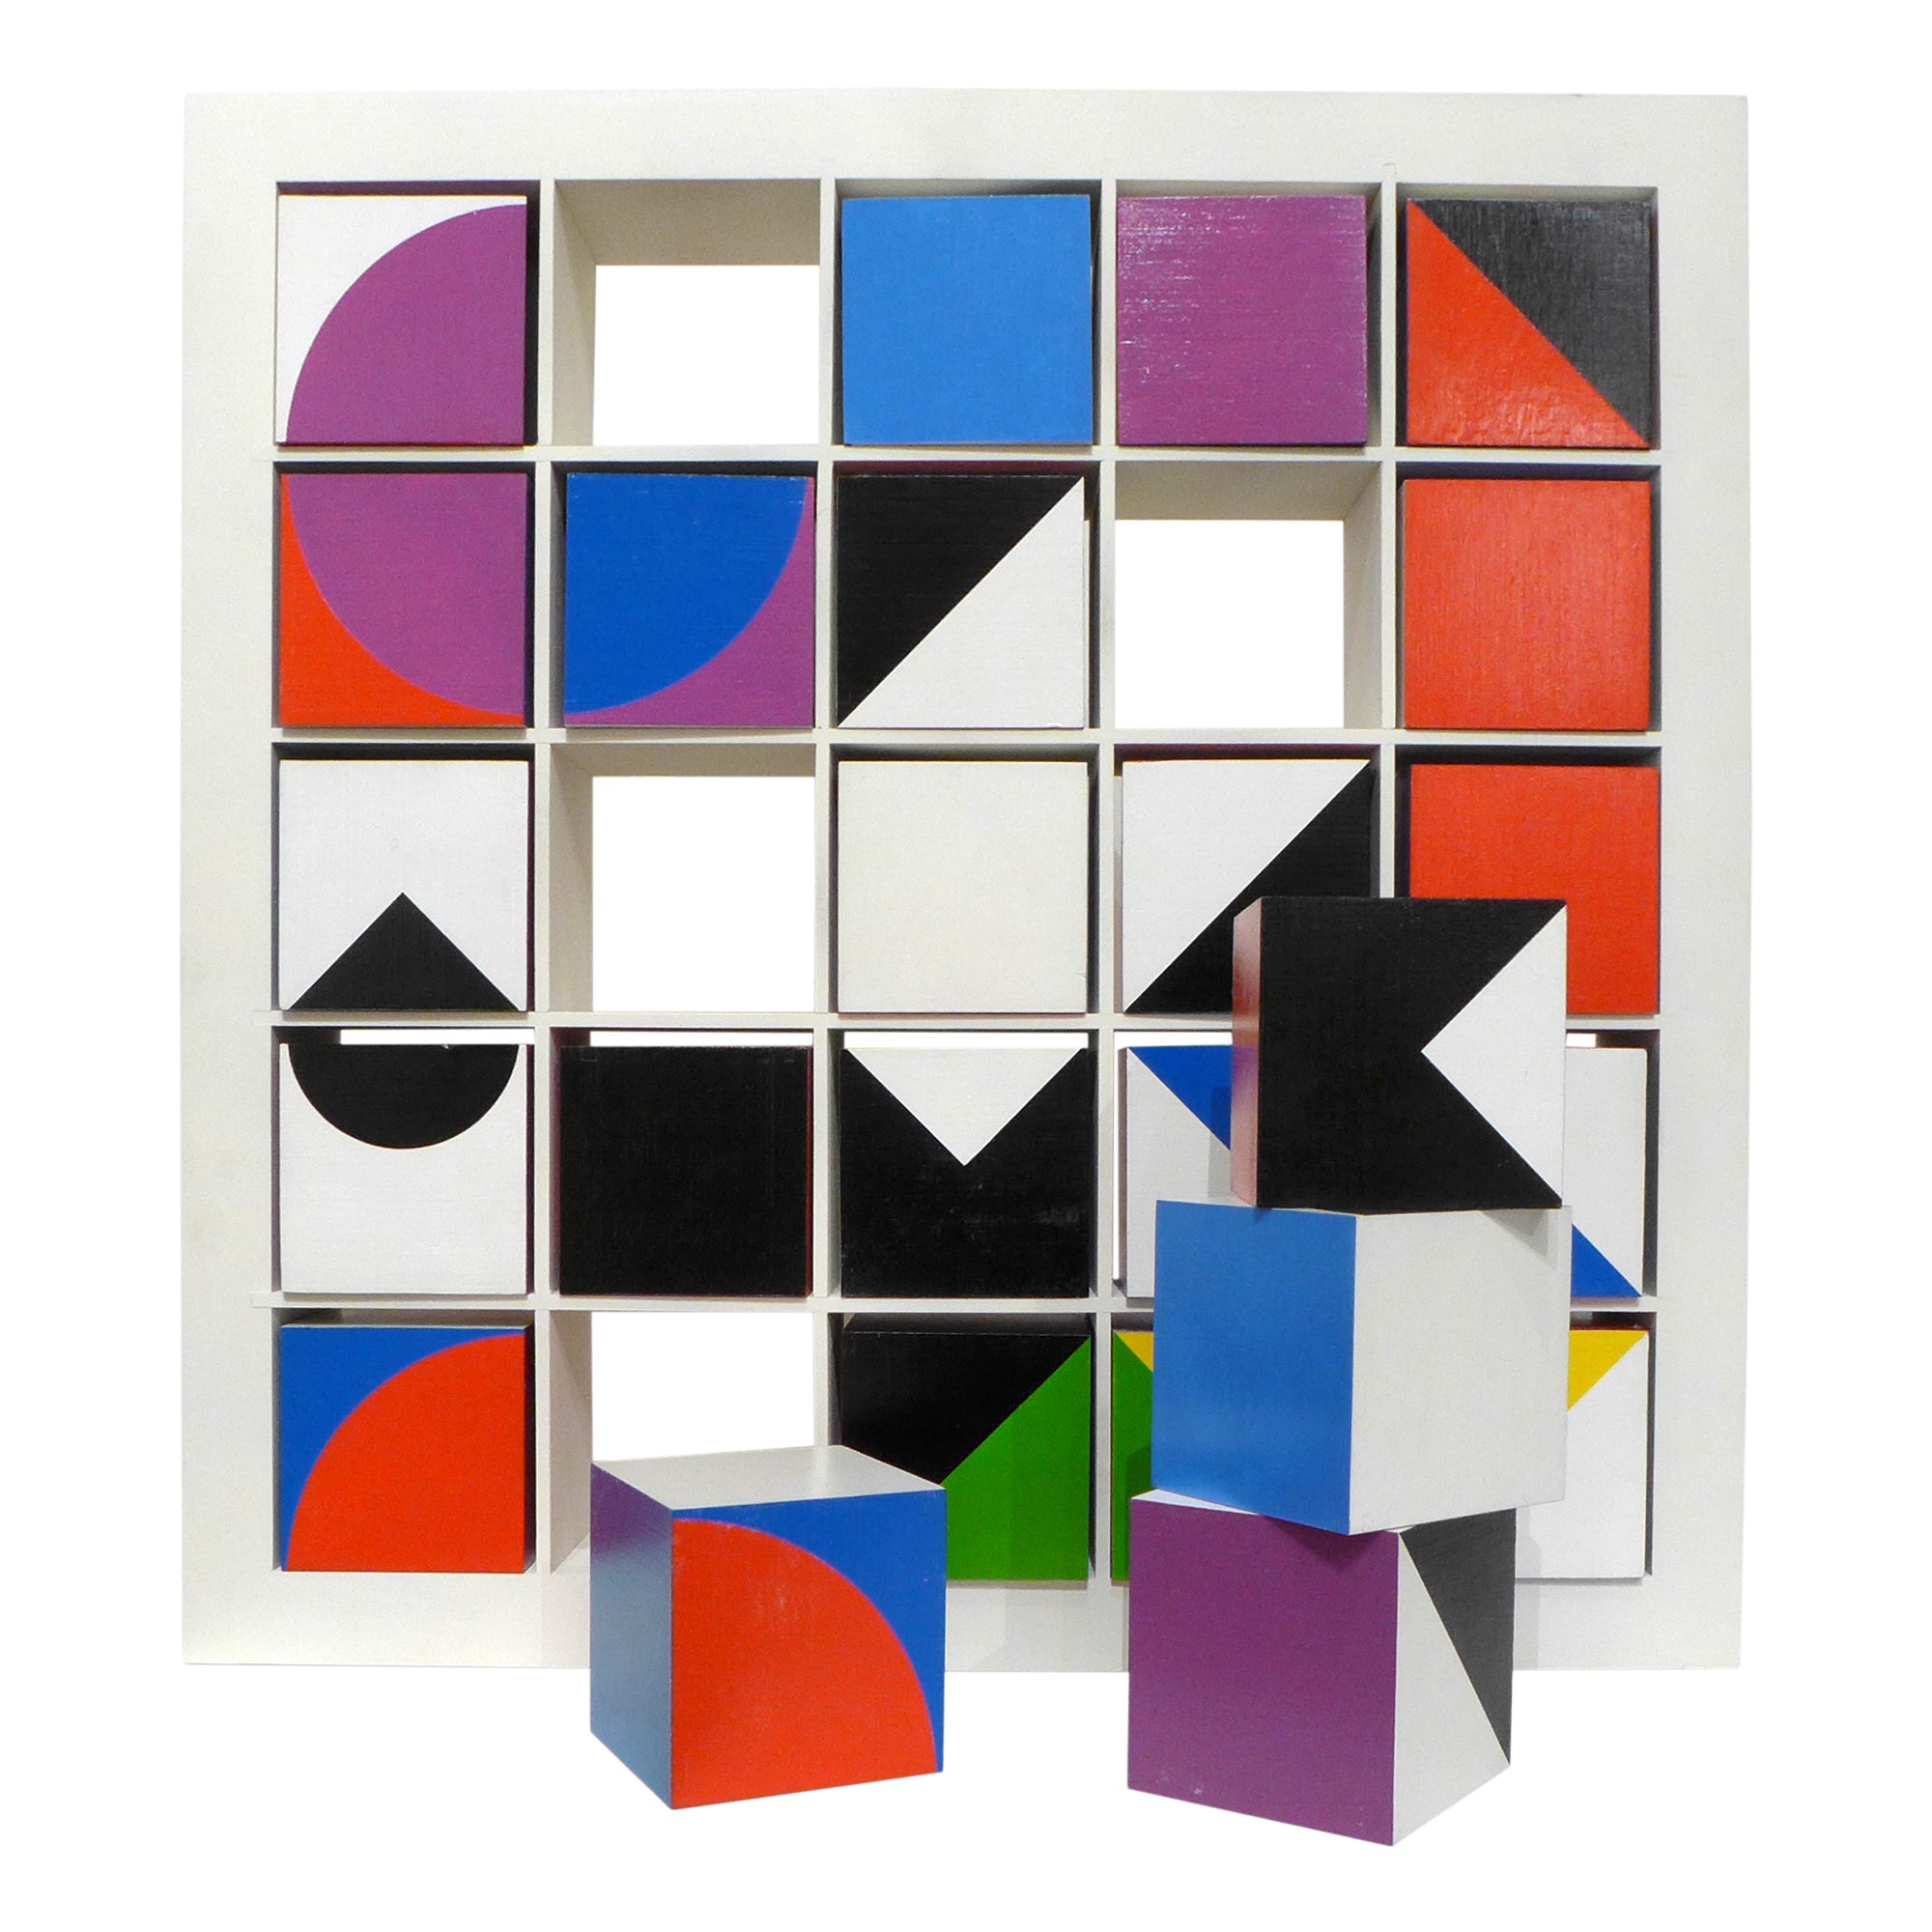 Op Art "Arrangements" Interactive Cubes Sculpture by Moshé Elimelech